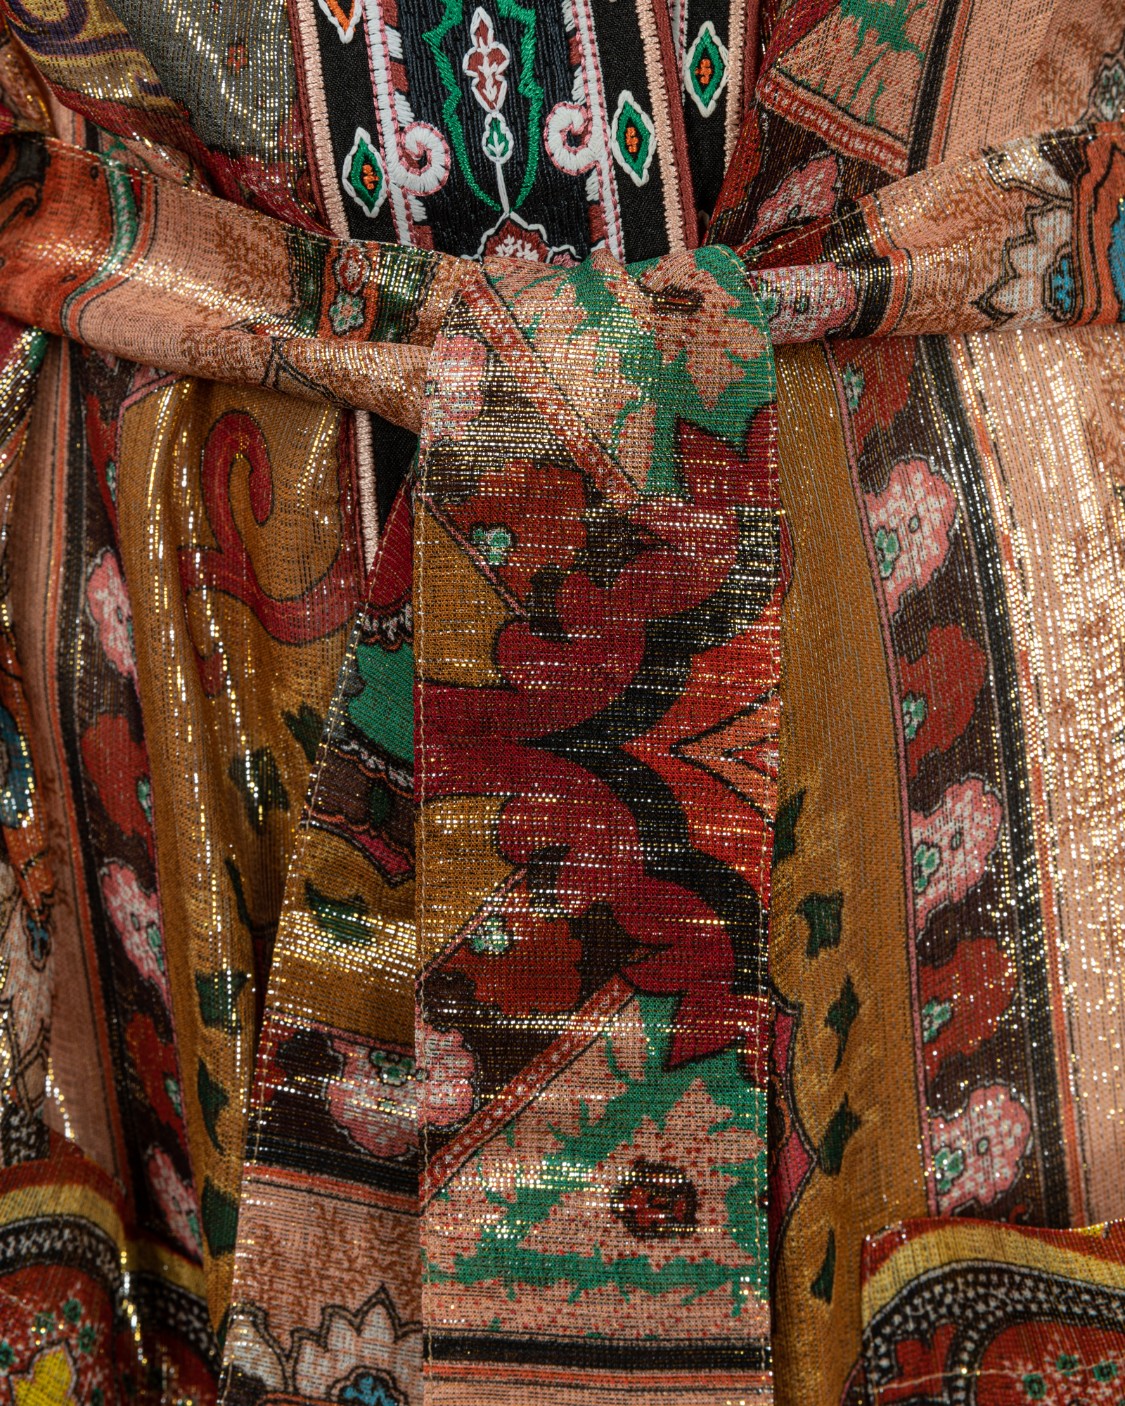 shop ETRO Sales Giacca: Etro giacca kimono in seta.
Maniche lunghe.
Cintura in vita removibile.
Decorata con motivi floreali.
Multicolore.
Vestibilità regolare.
Composizione: 67% seta 33% fibra metallizzata.
Made in Italy.. 16102 5620-8000 number 515308